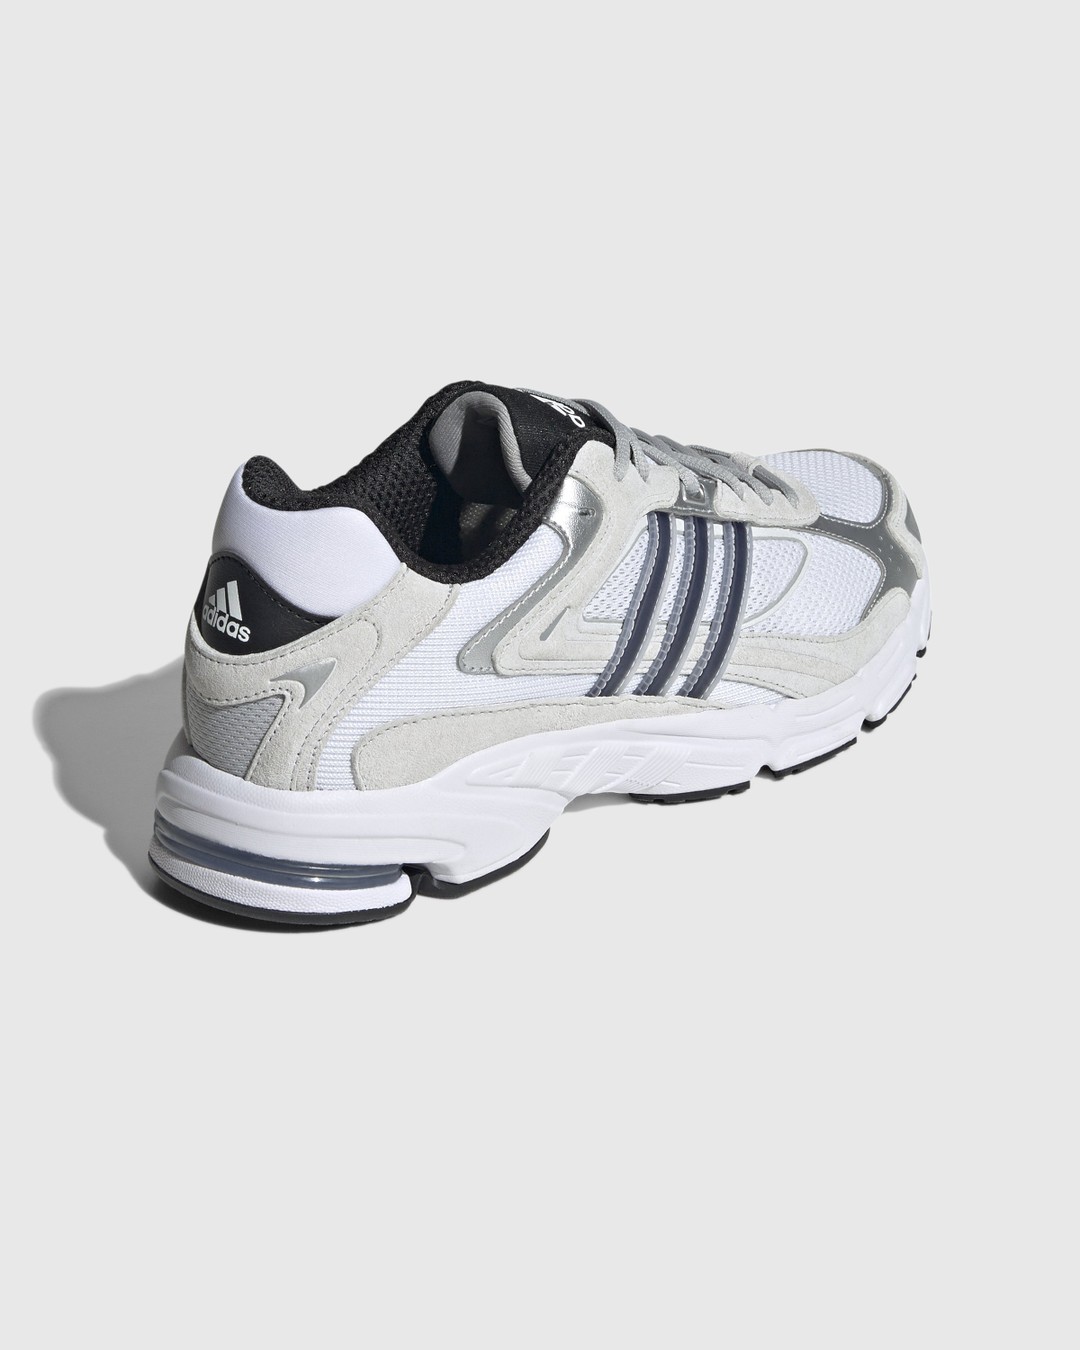 Adidas – Response CL White/Black  - Sneakers - White - Image 4